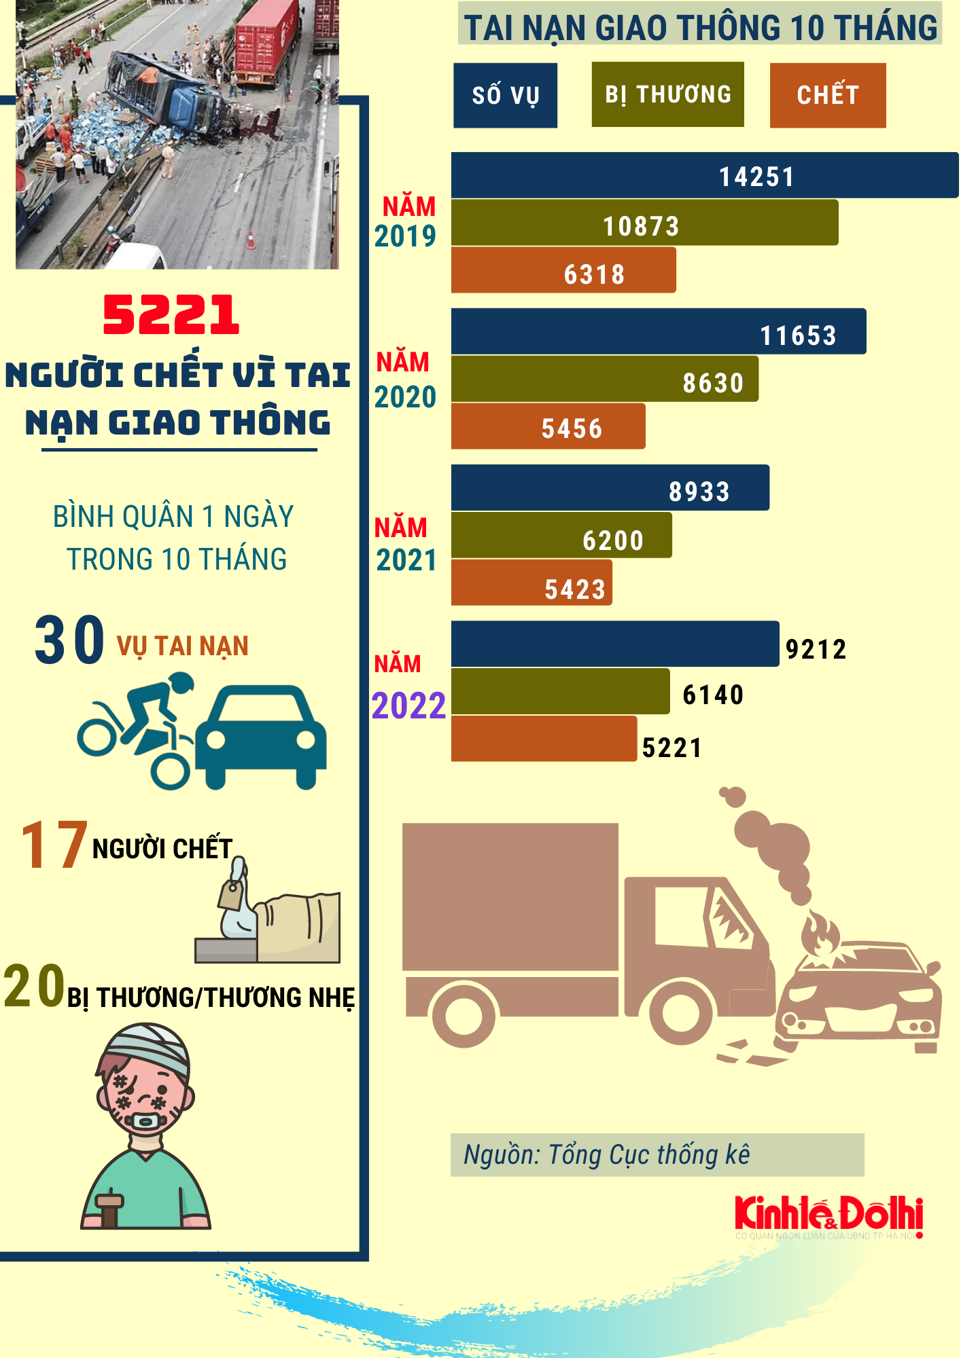 10 tháng năm 2022: Hơn 5200 người thiệt mạng vì tai nạn giao thông - Ảnh 1